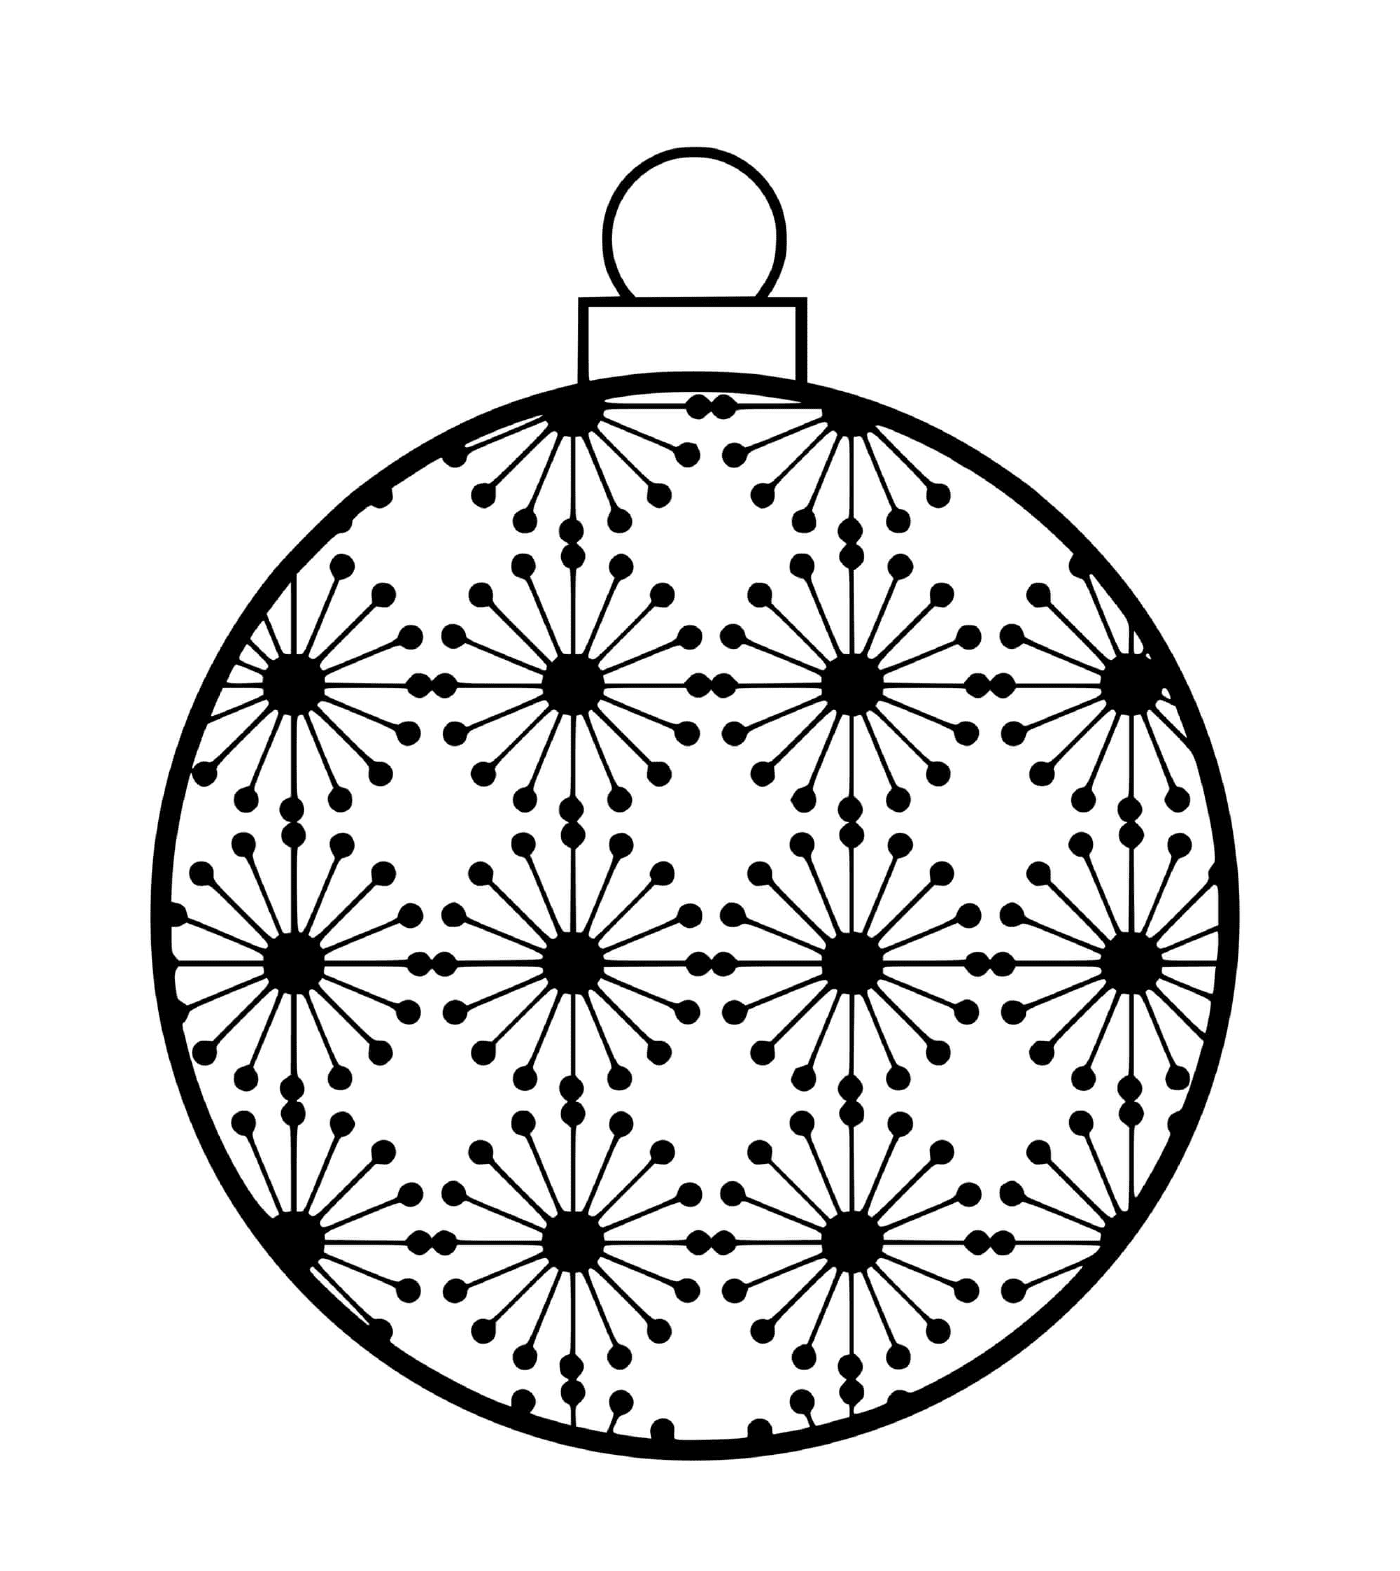  एक क्रिसमस की गेंद जिसमें परमाणुओं के वैज्ञानिक रूप हैं 